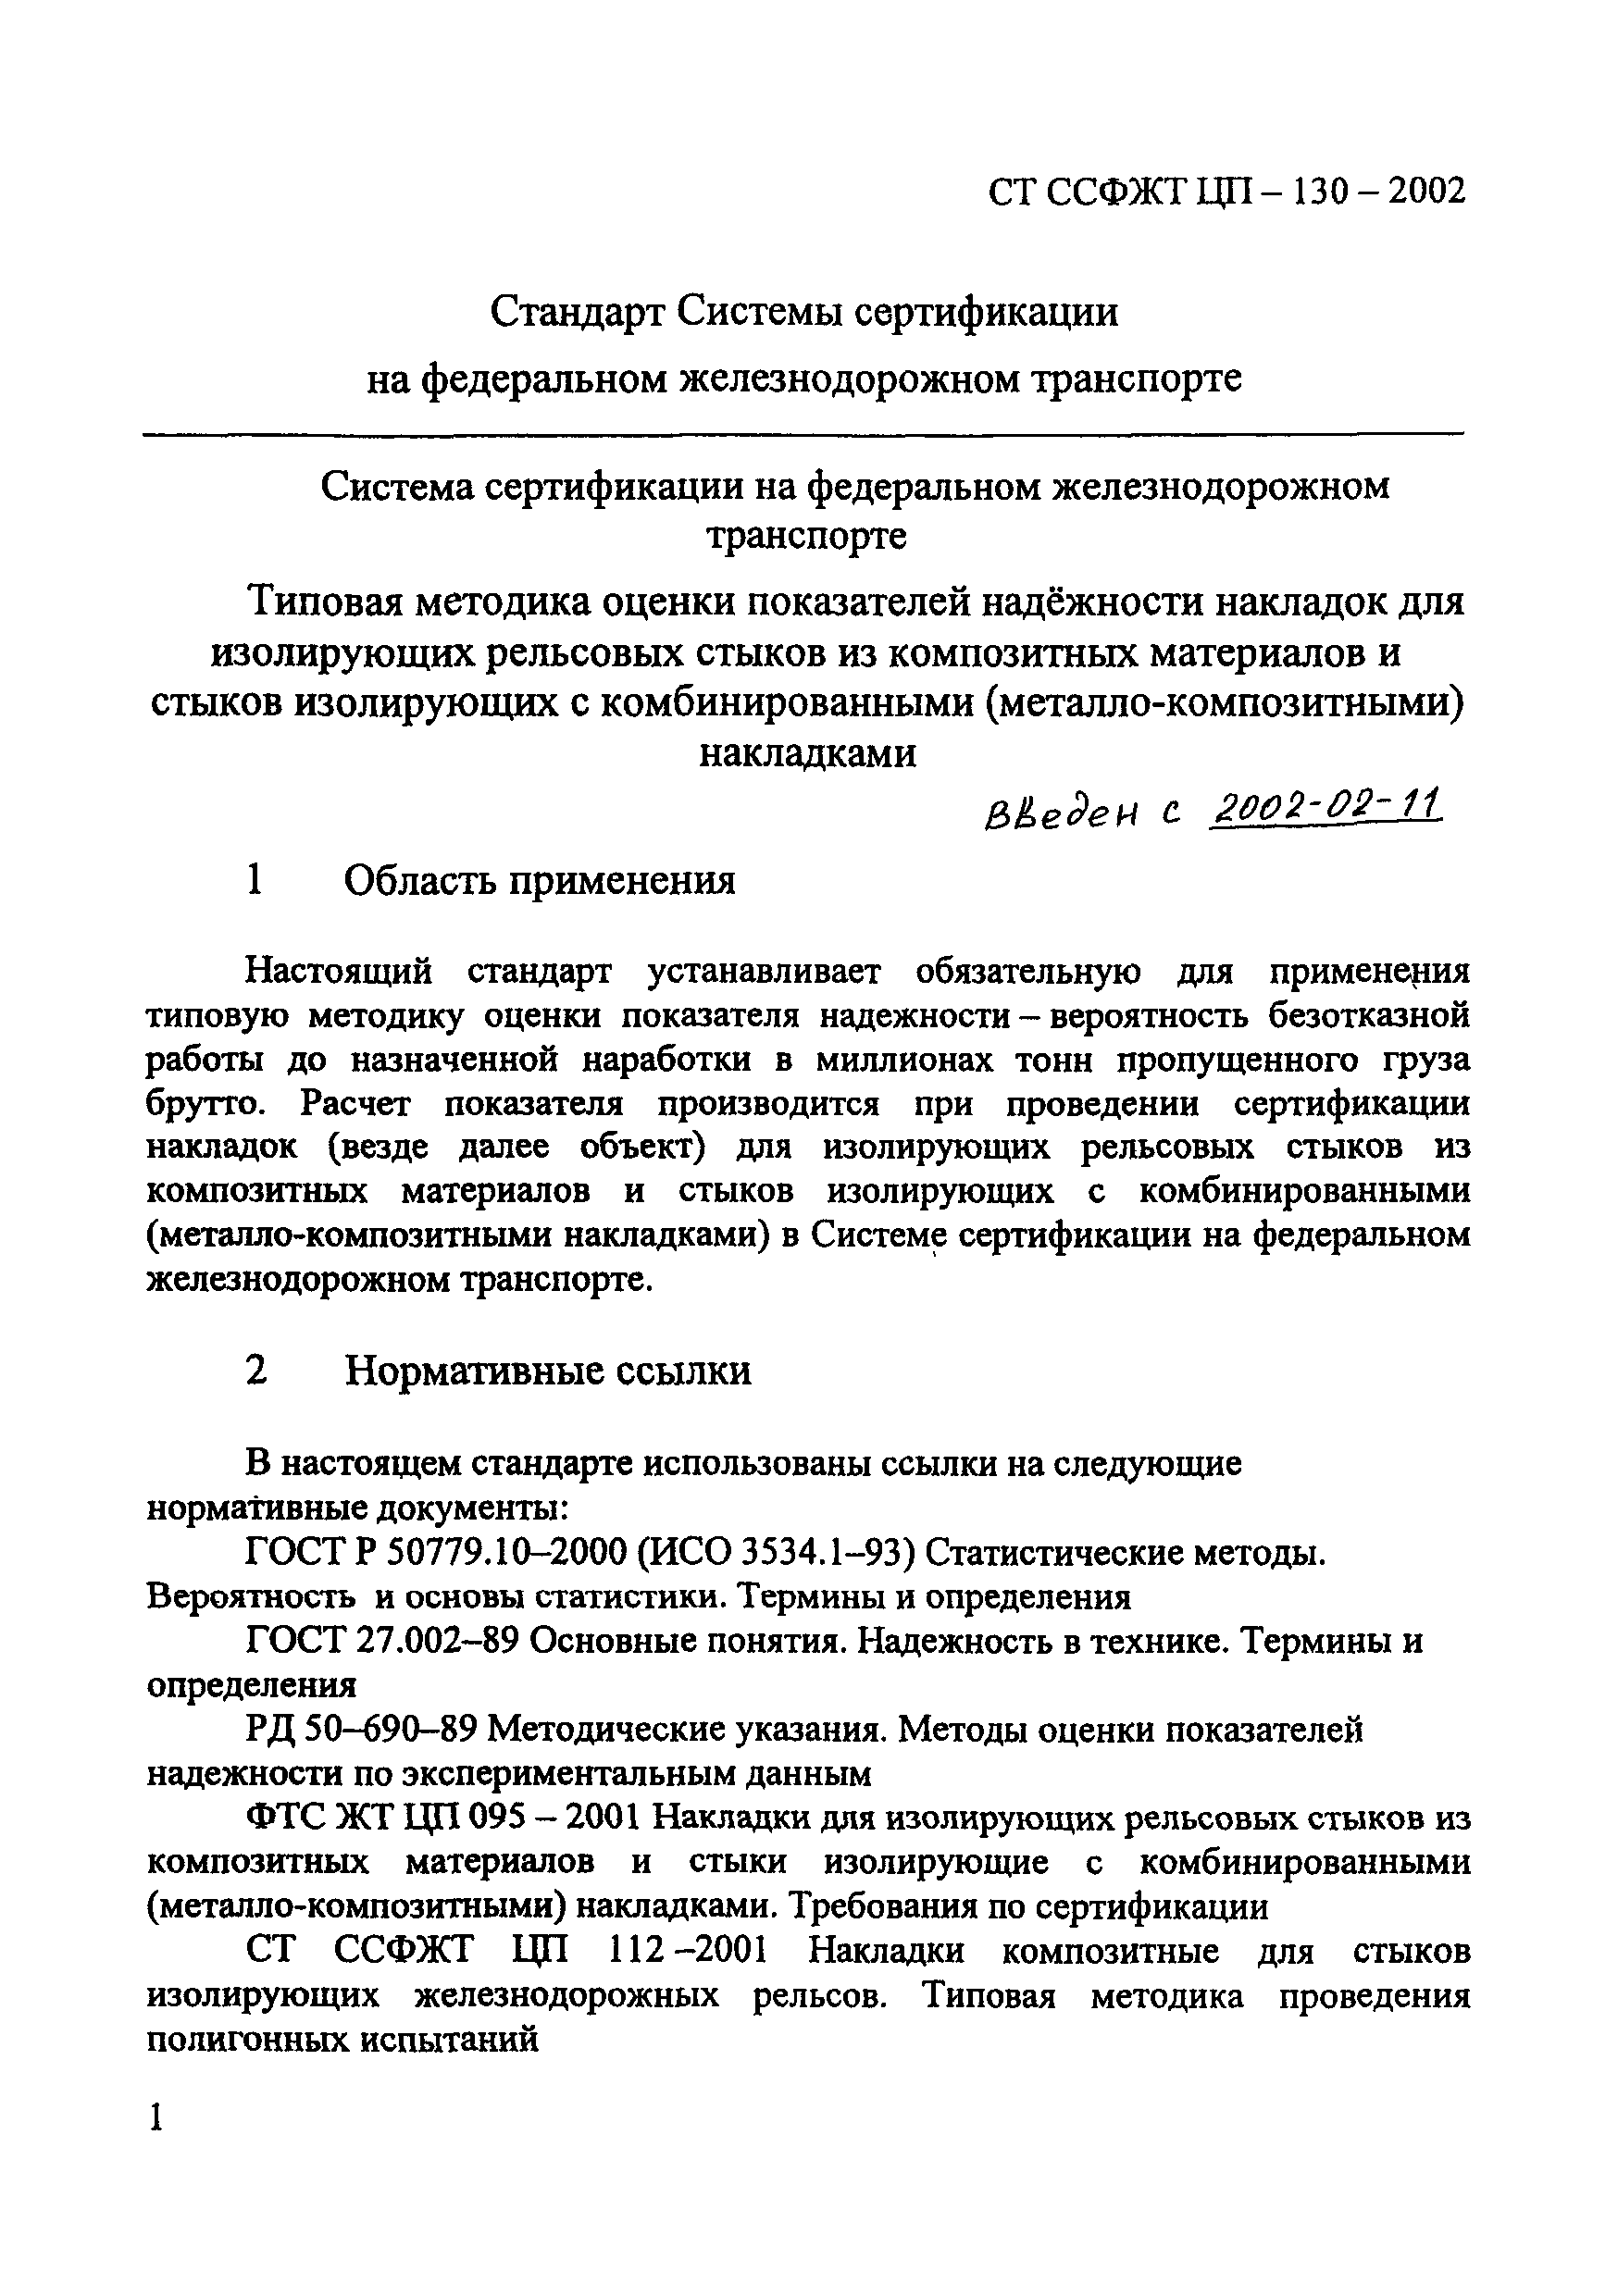 СТ ССФЖТ ЦП-130-2002